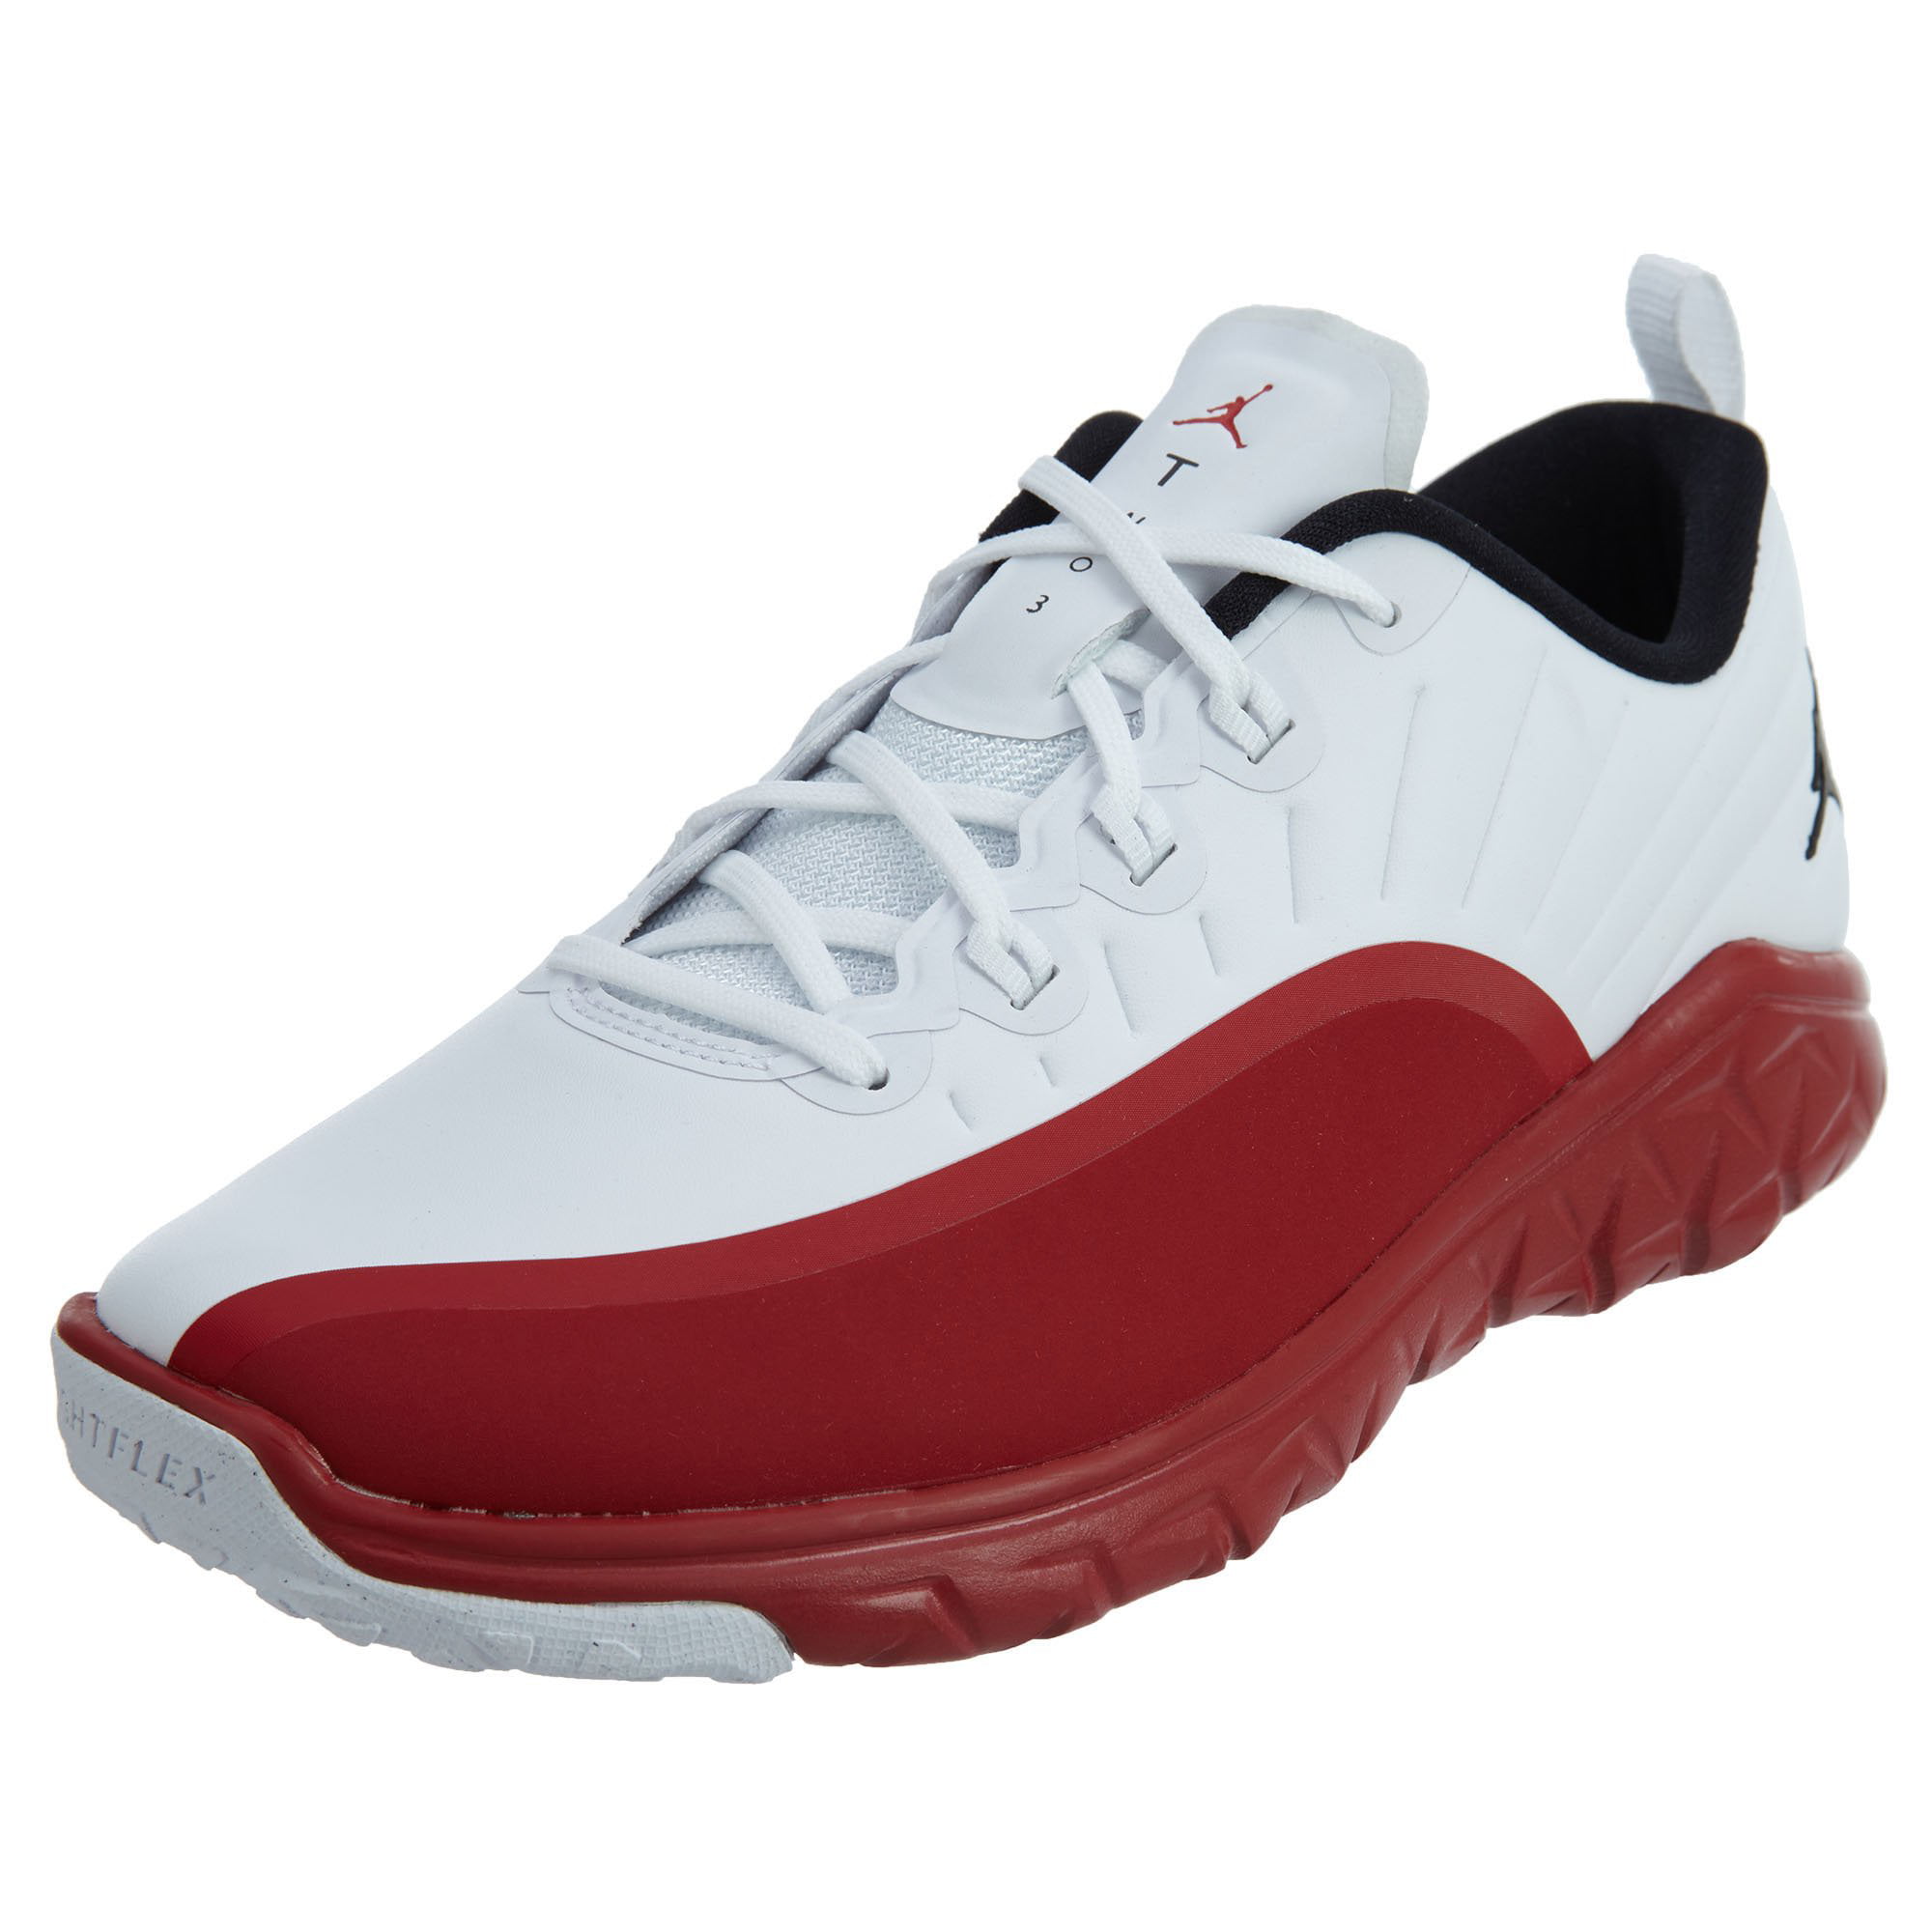 881462-120 : Jordan Trainer Prime BG boys shoes White -